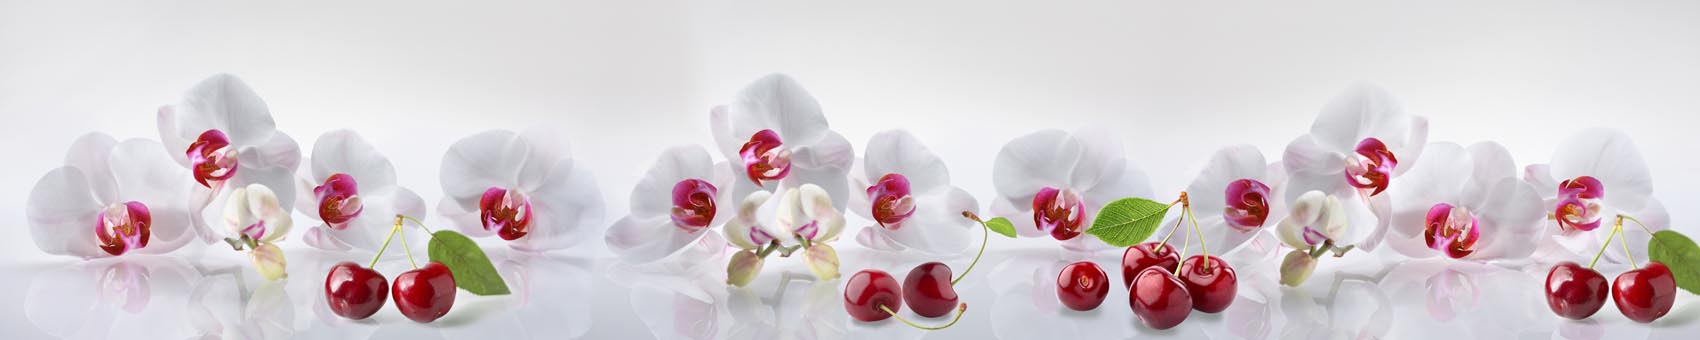 Белые орхидеи и вшня